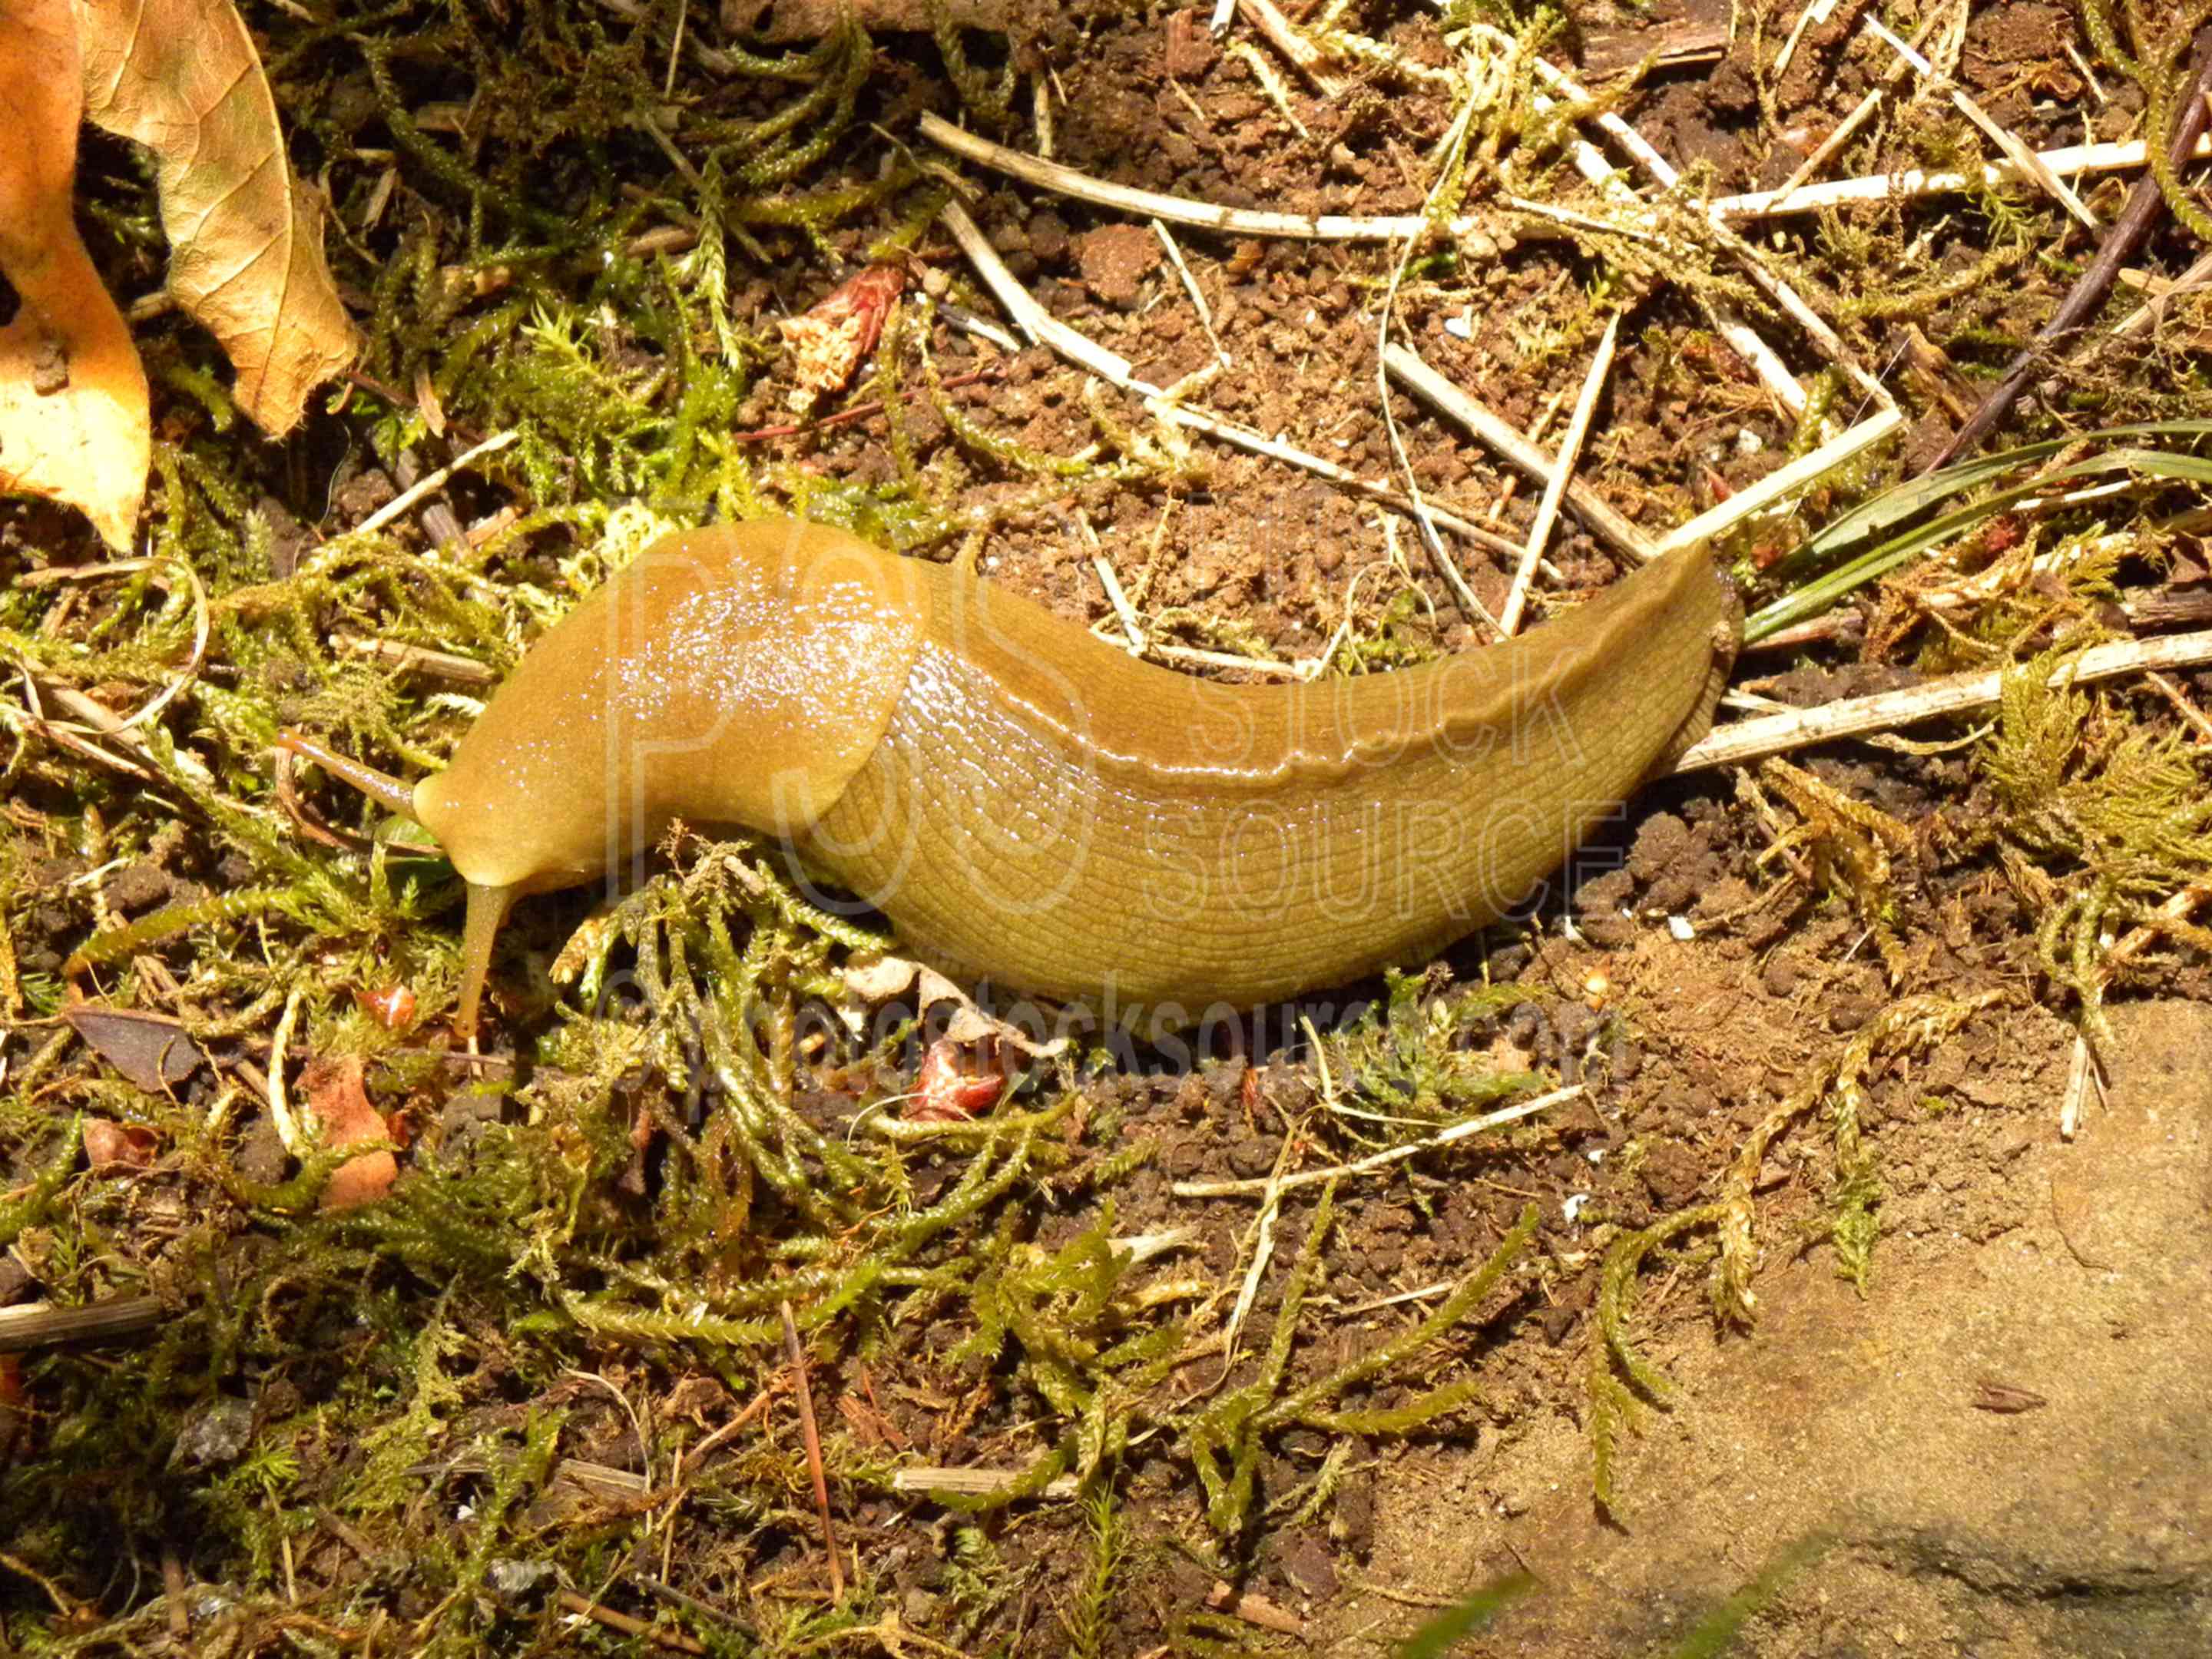 Banana Slug,mollusk,slug,slime,slimy,crawling,ariolimax columbianus,animals